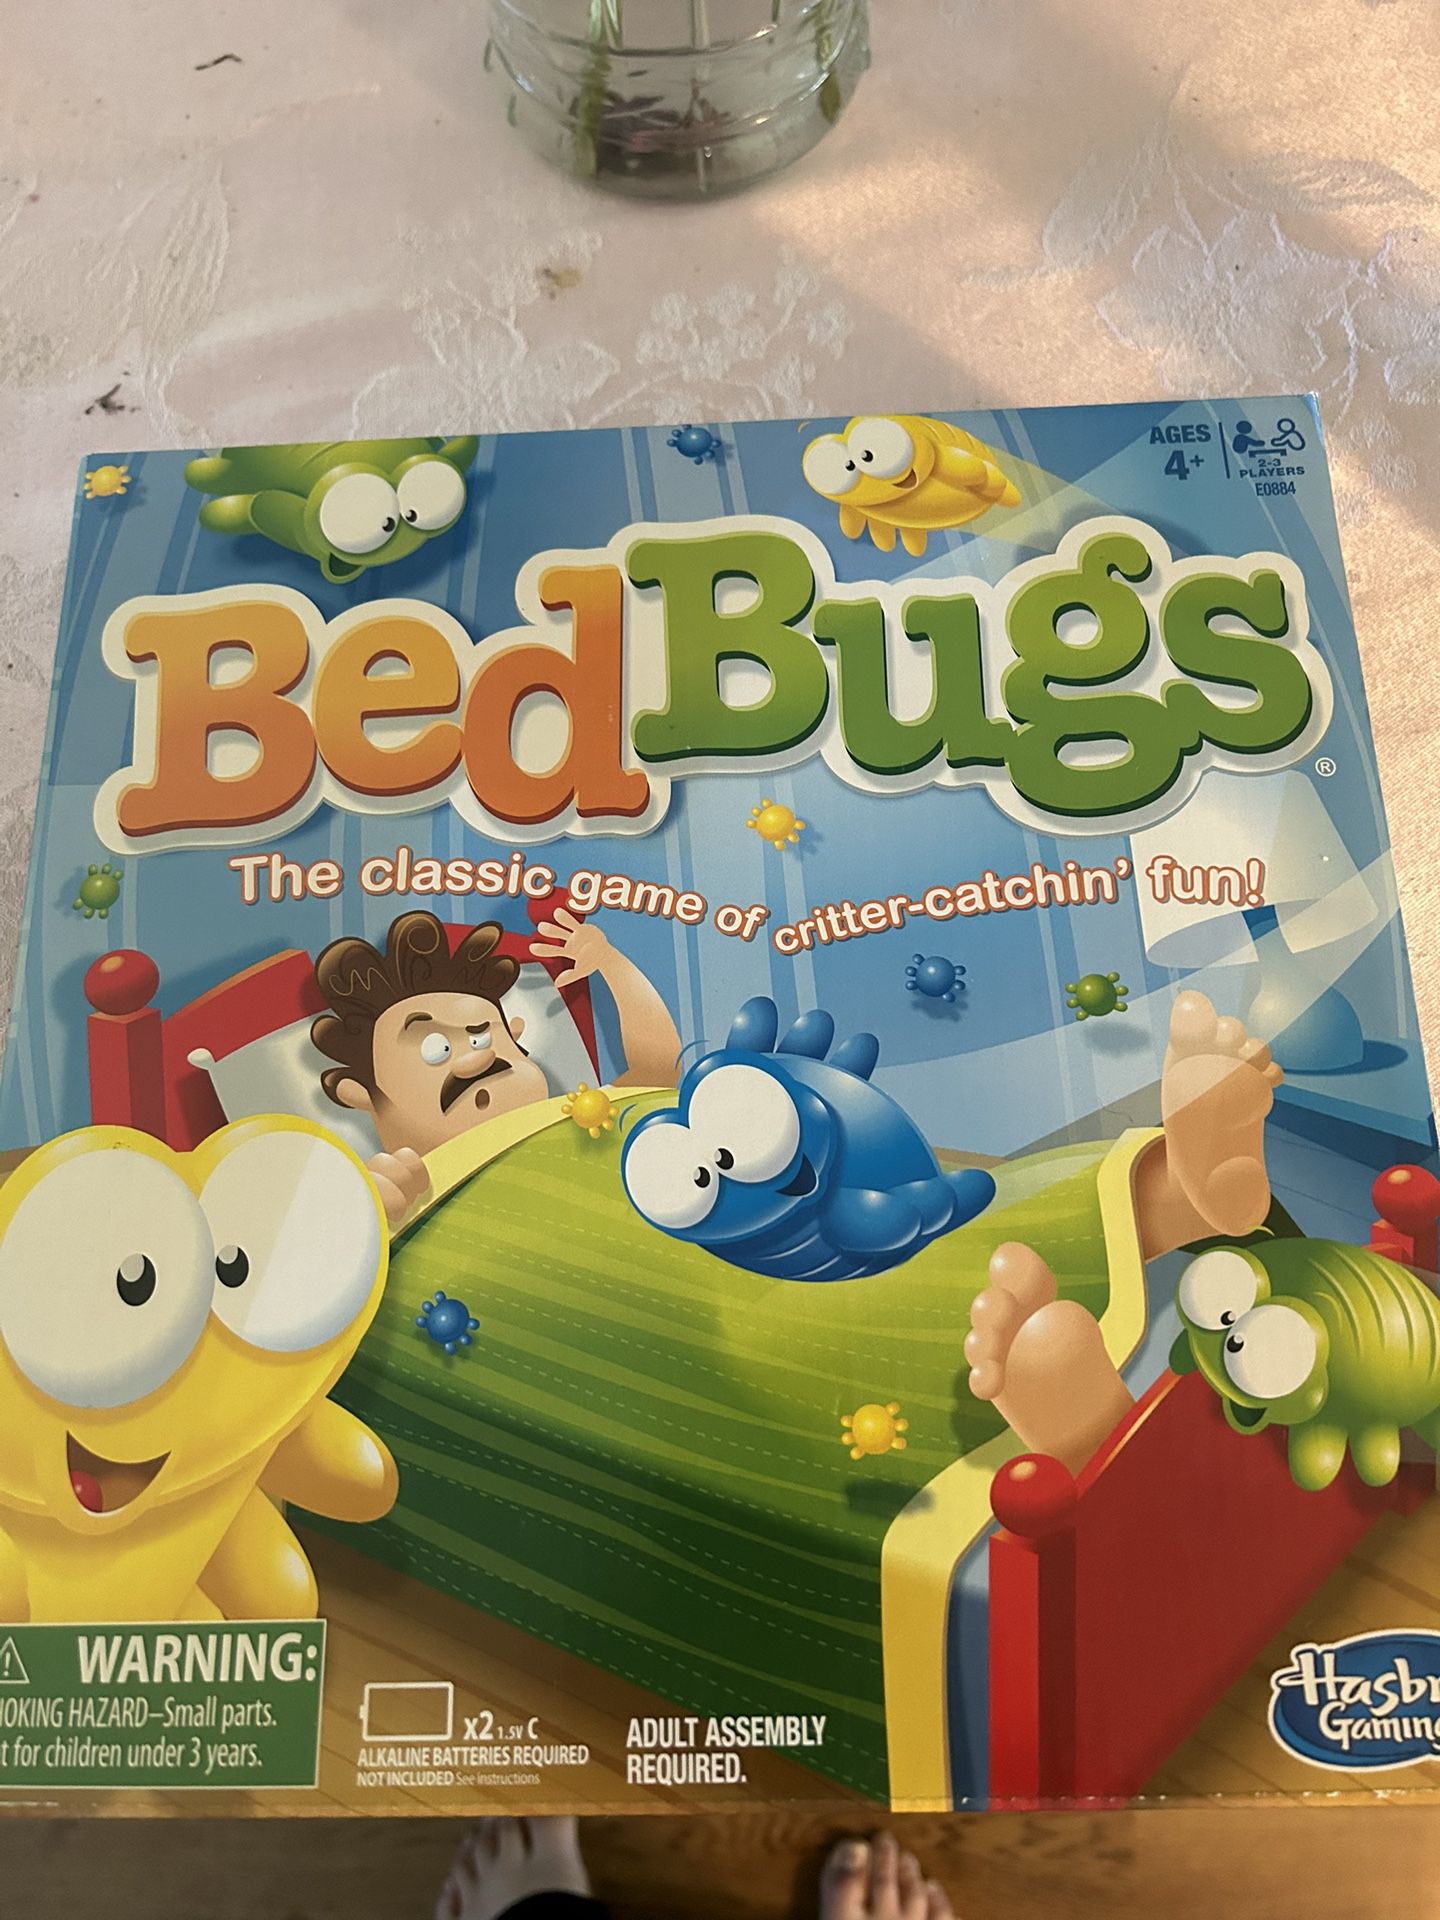 Hasbro’s  Fun-filled family game night board game “Bed Bugs”